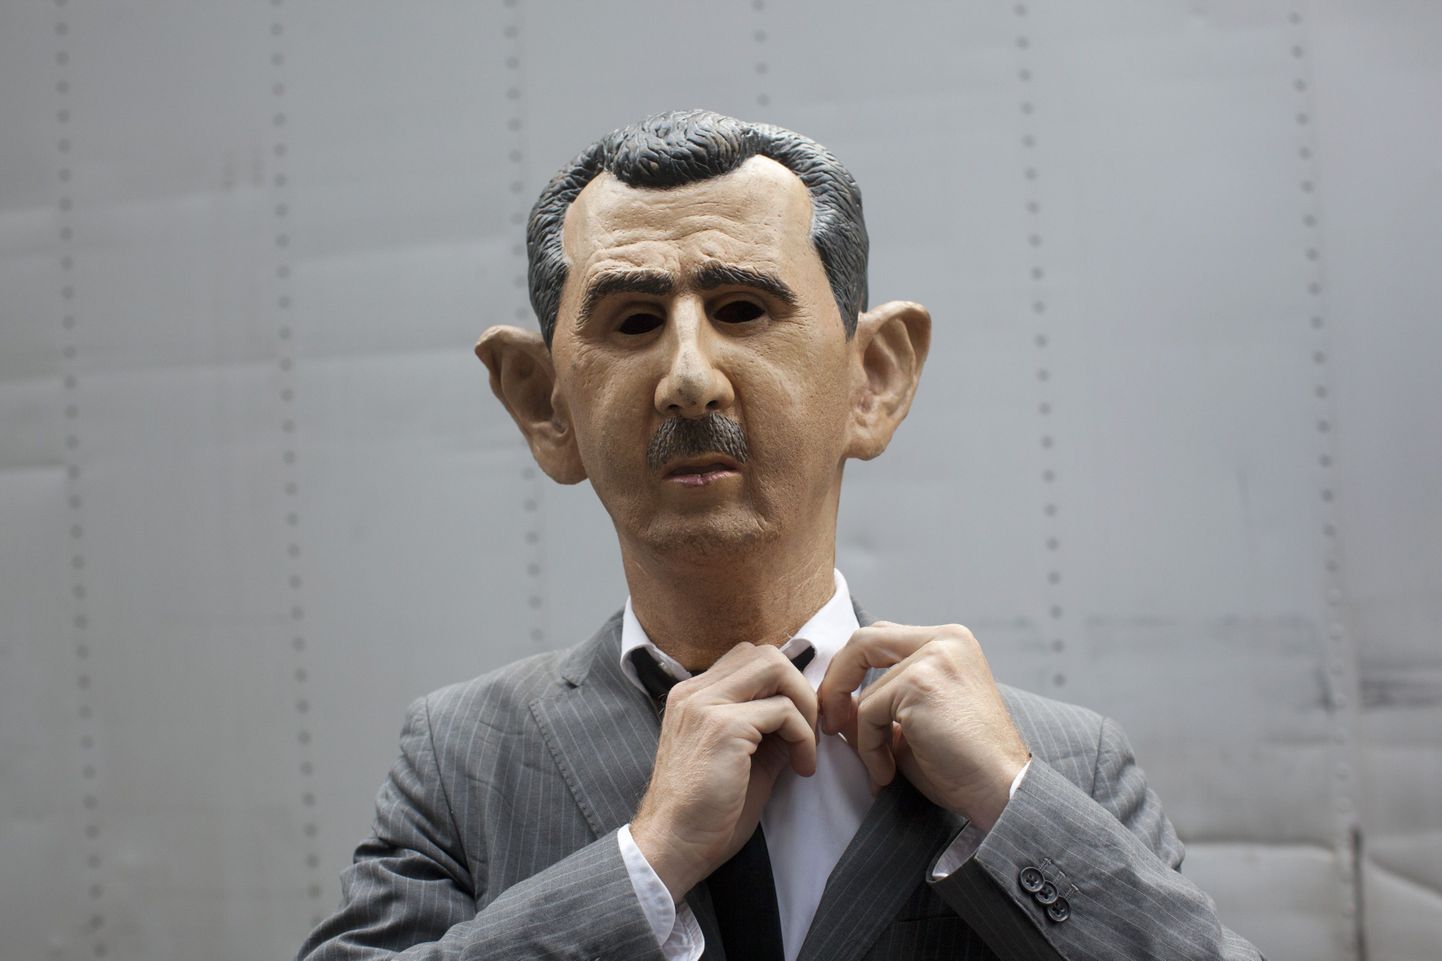 Süüria presidendiks Bashar al-Assadiks kehastunud mees valmistub osalema meeleavaldusel ÜRO peahoone juures New Yorgis.